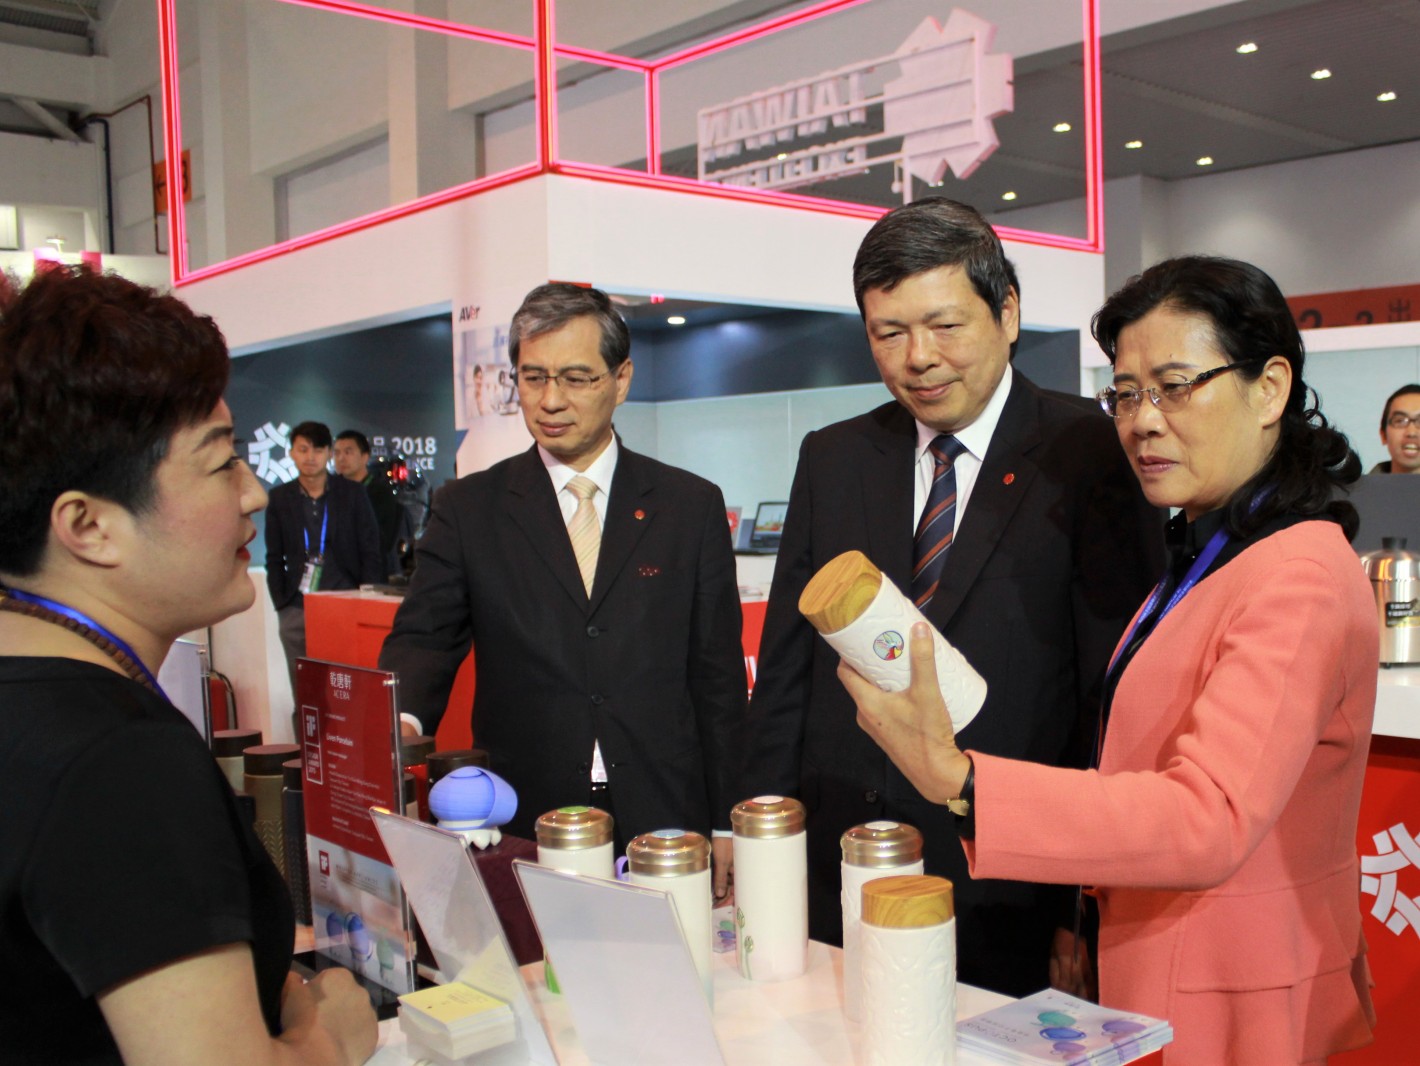 云南商务厅代表对乾唐轩陶瓷杯活水效果十分感兴趣